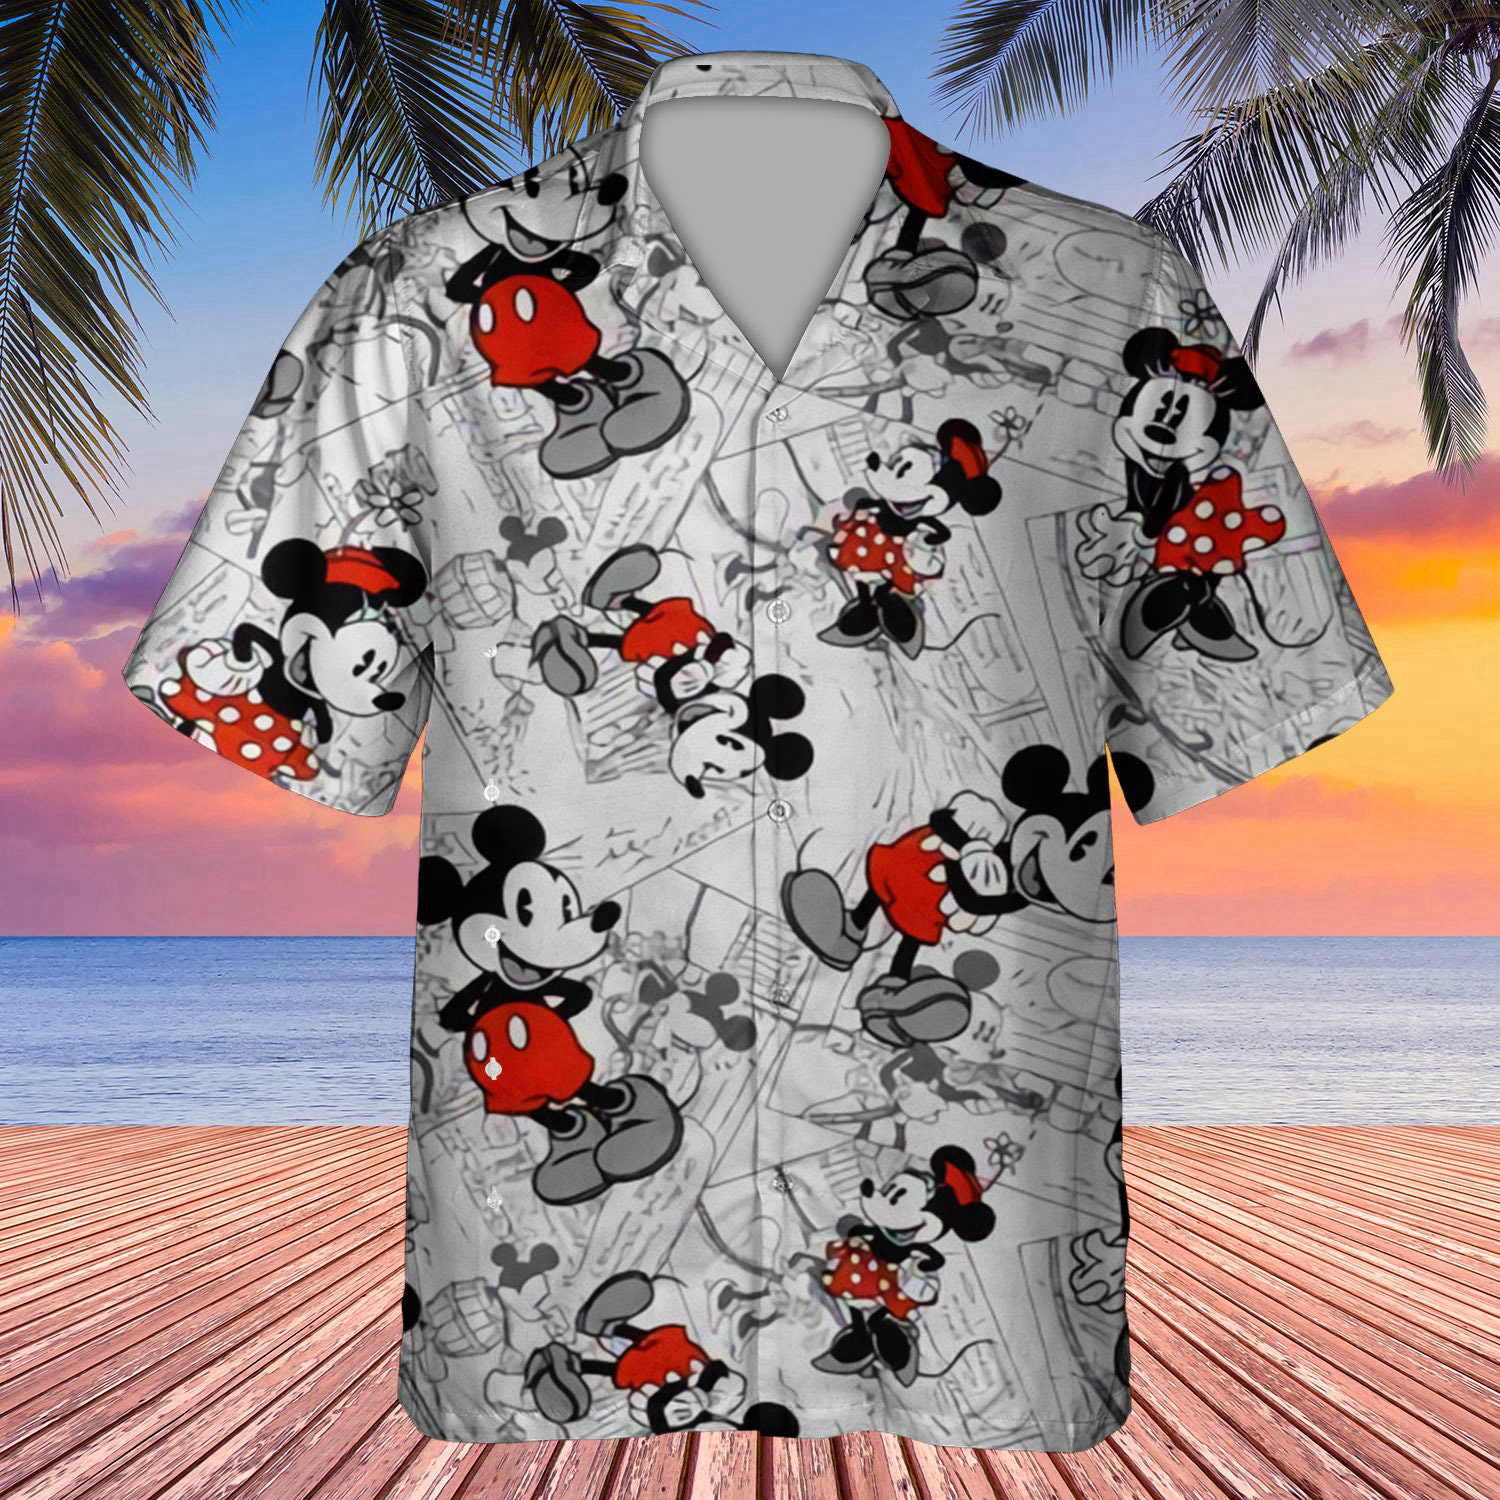 Summer Tropical Minnie And Mickey Pattern 3D Hawaiian Shirt For Men Women